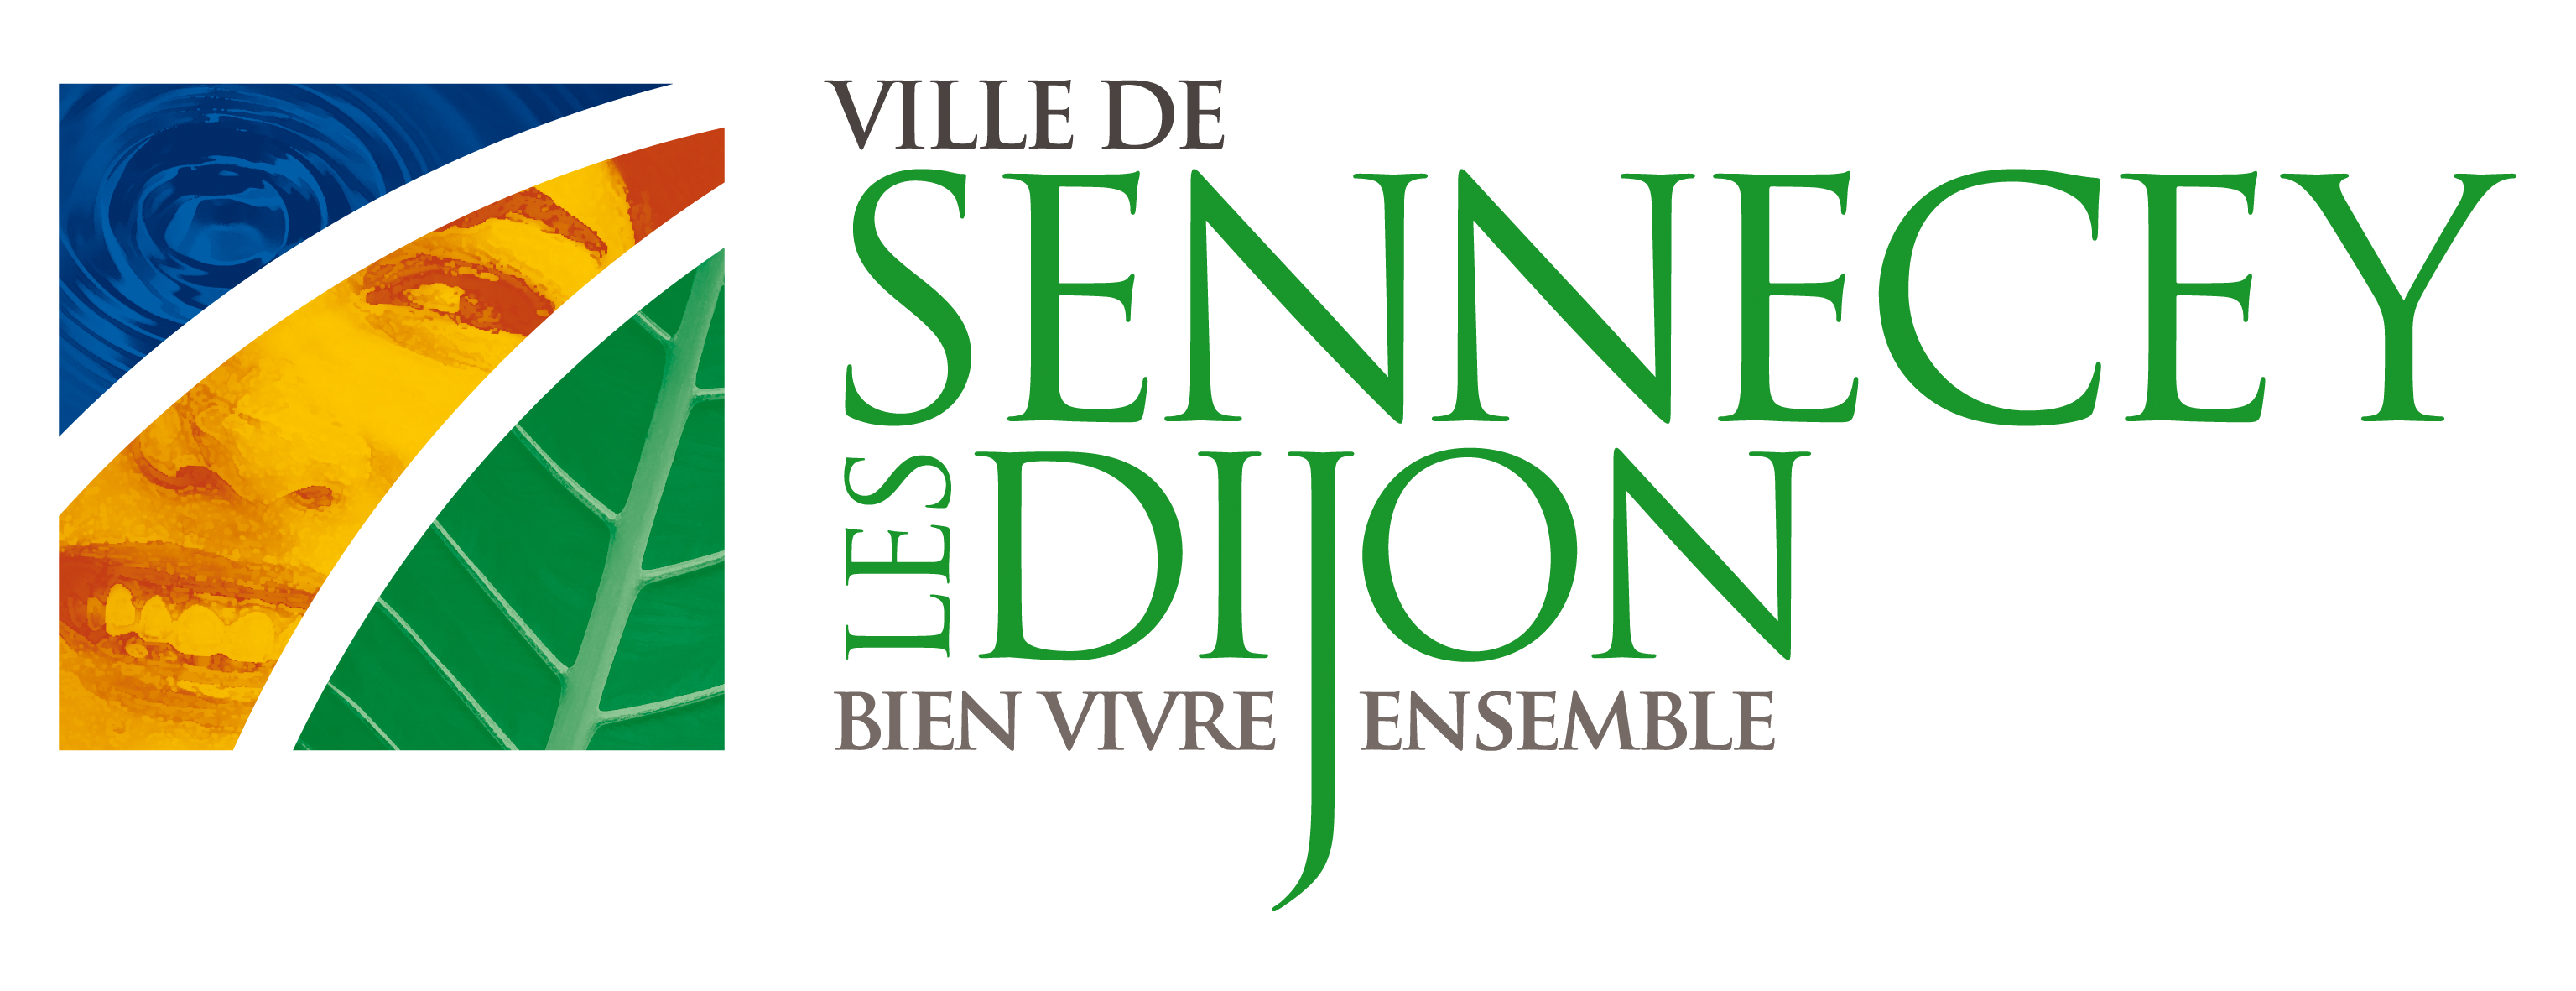 Commune de Sennecey-lès-Dijon